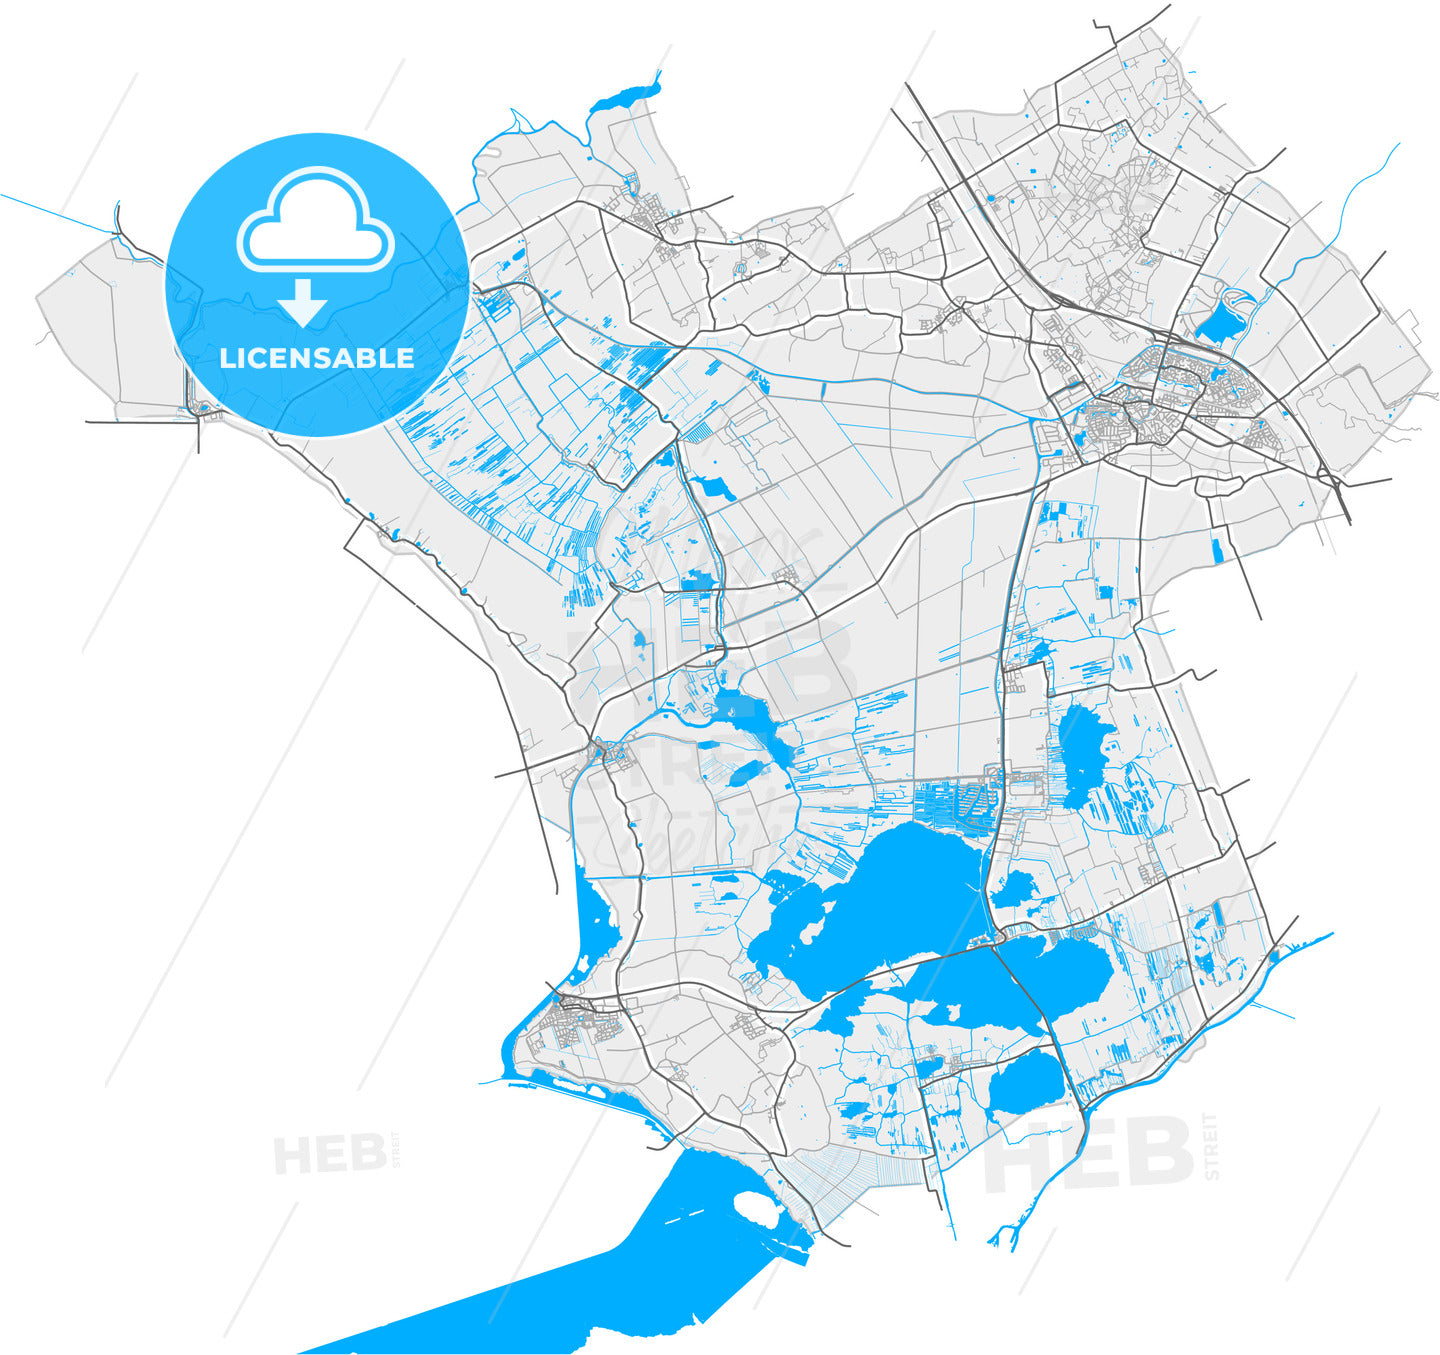 Steenwijkerland, Overijssel, Netherlands, high quality vector map